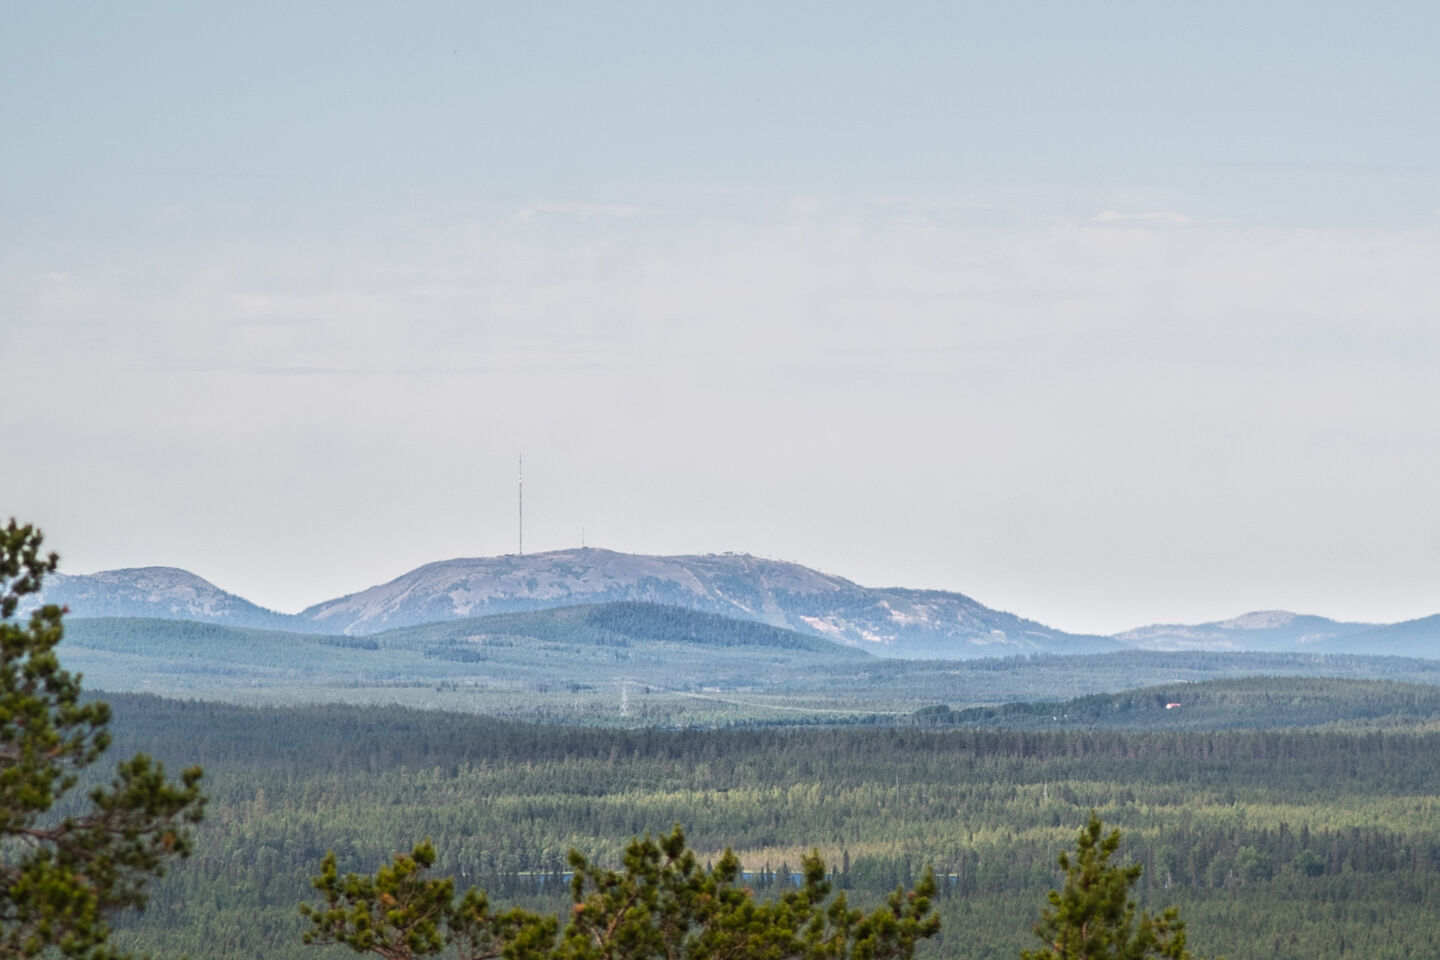 Pyhätunturi Fell in summer, a filming location in Finnish Lapland